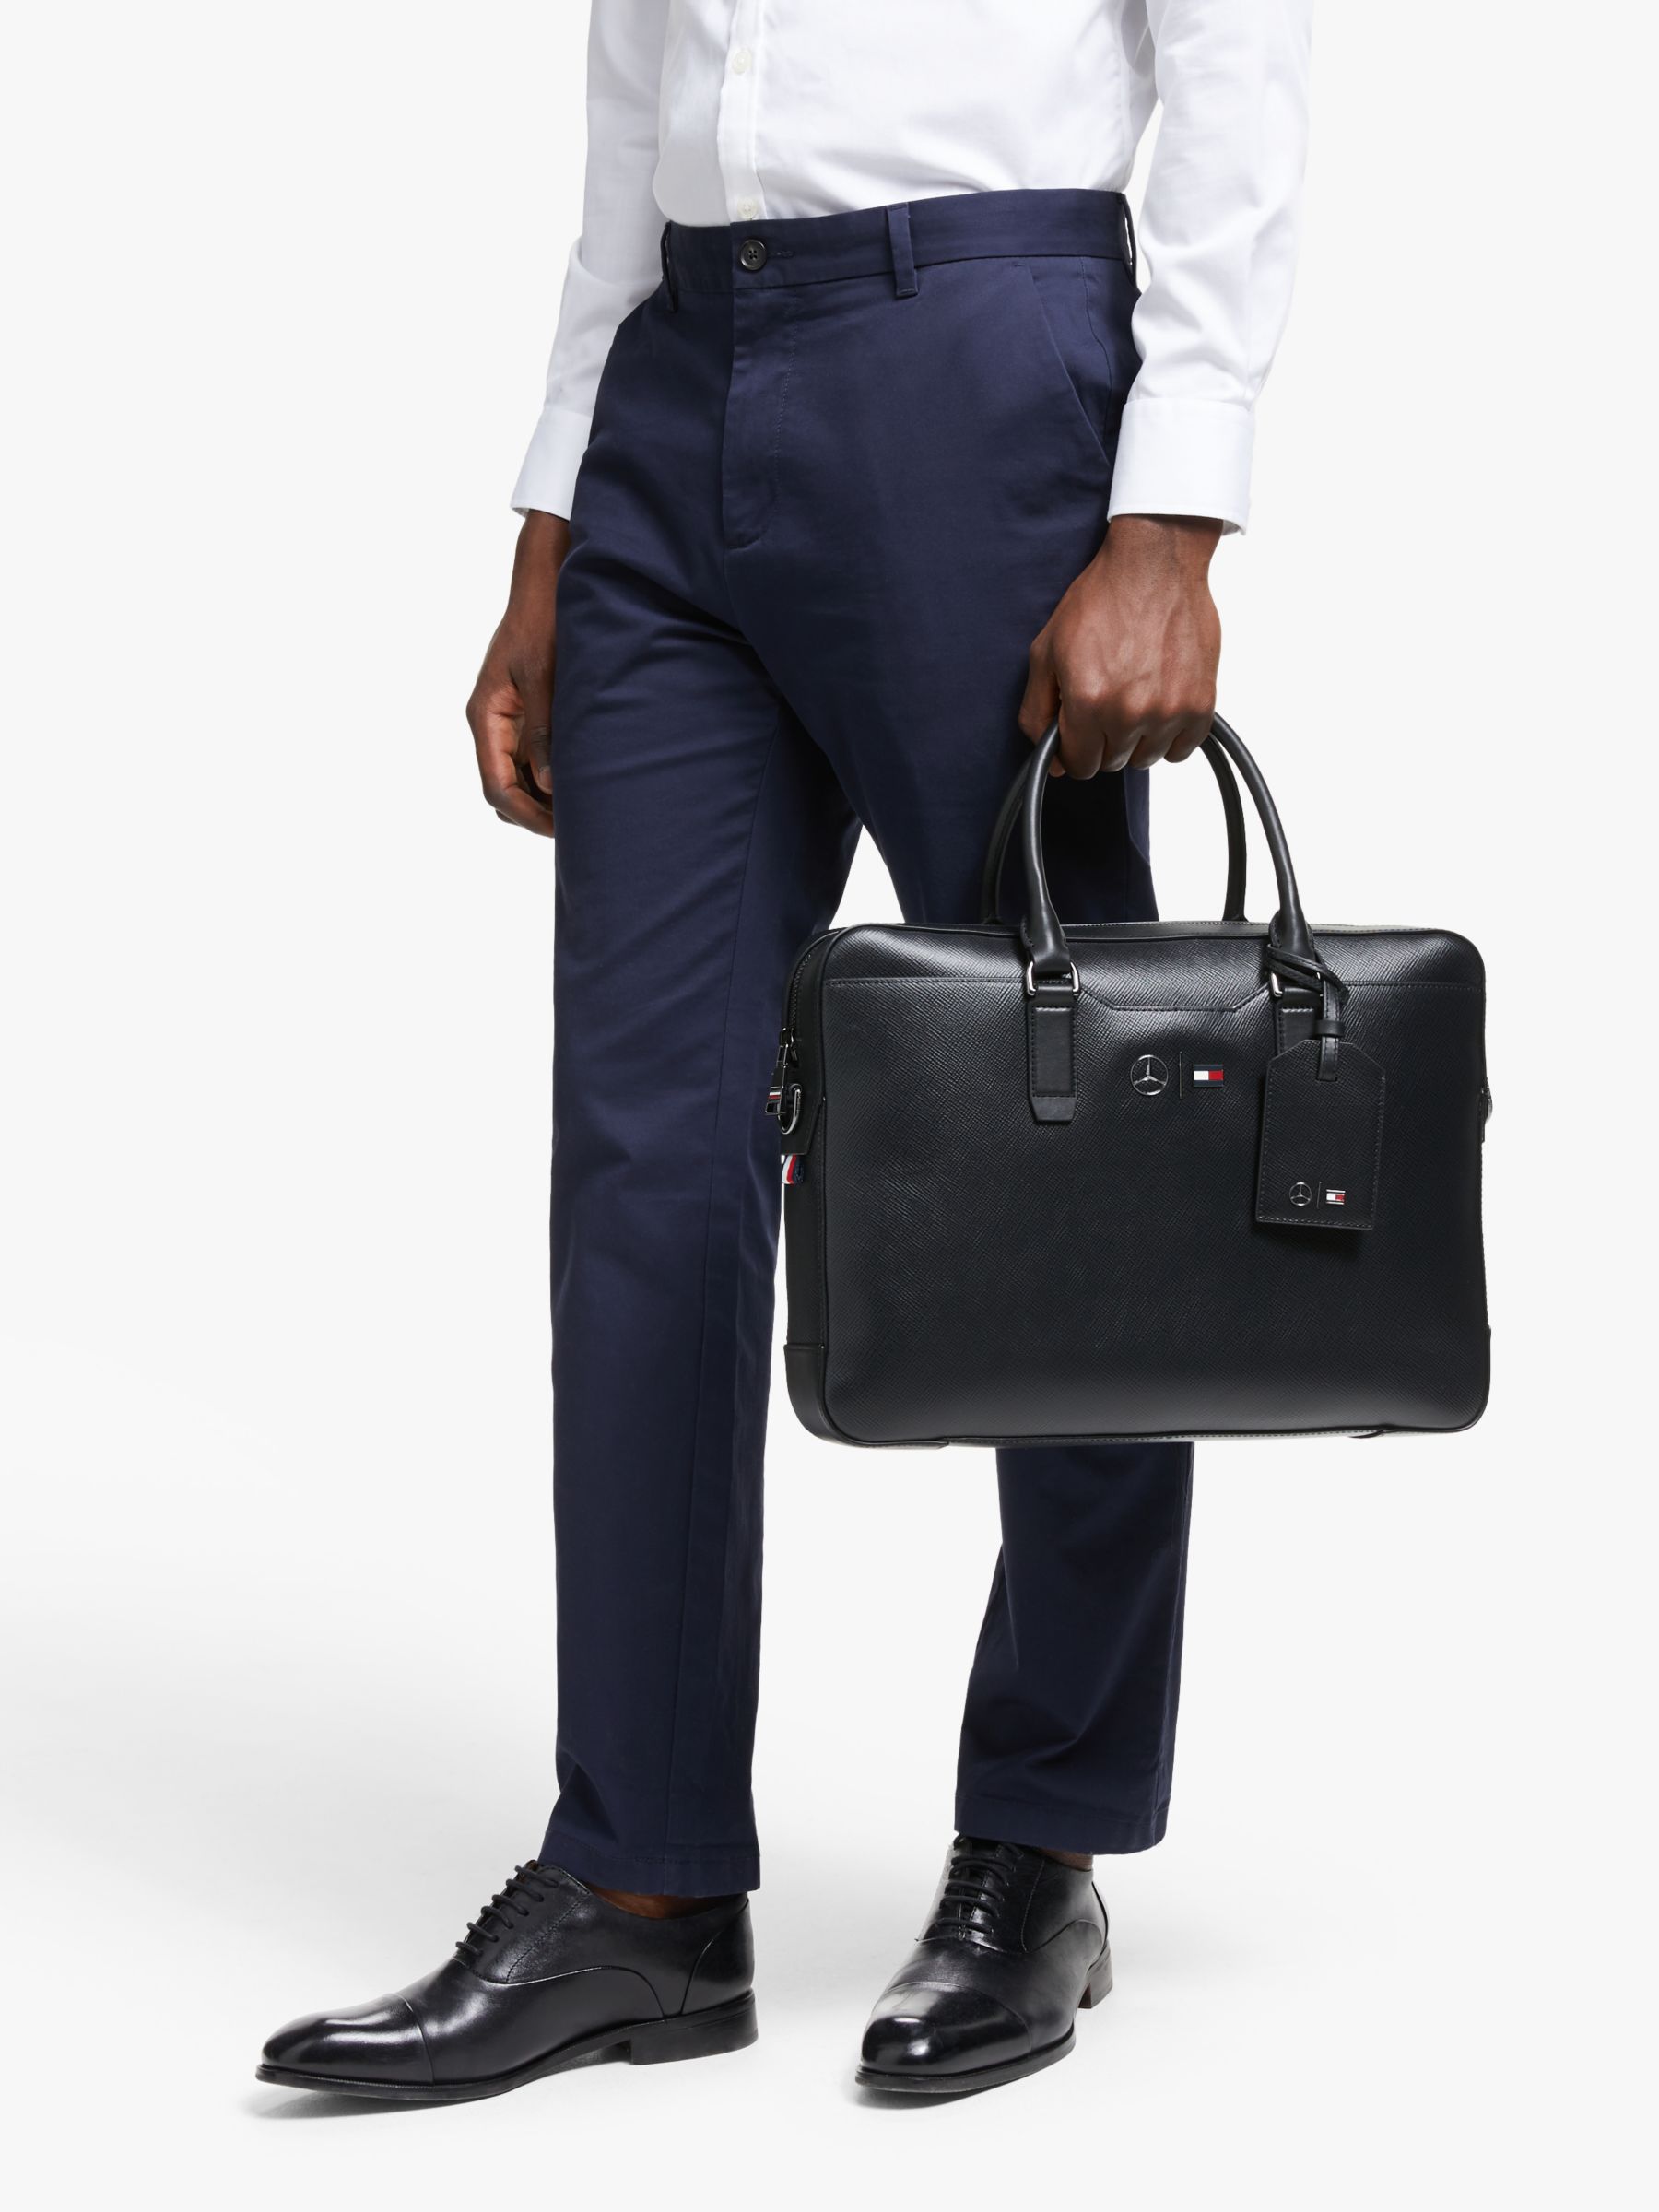 briefcase tommy hilfiger